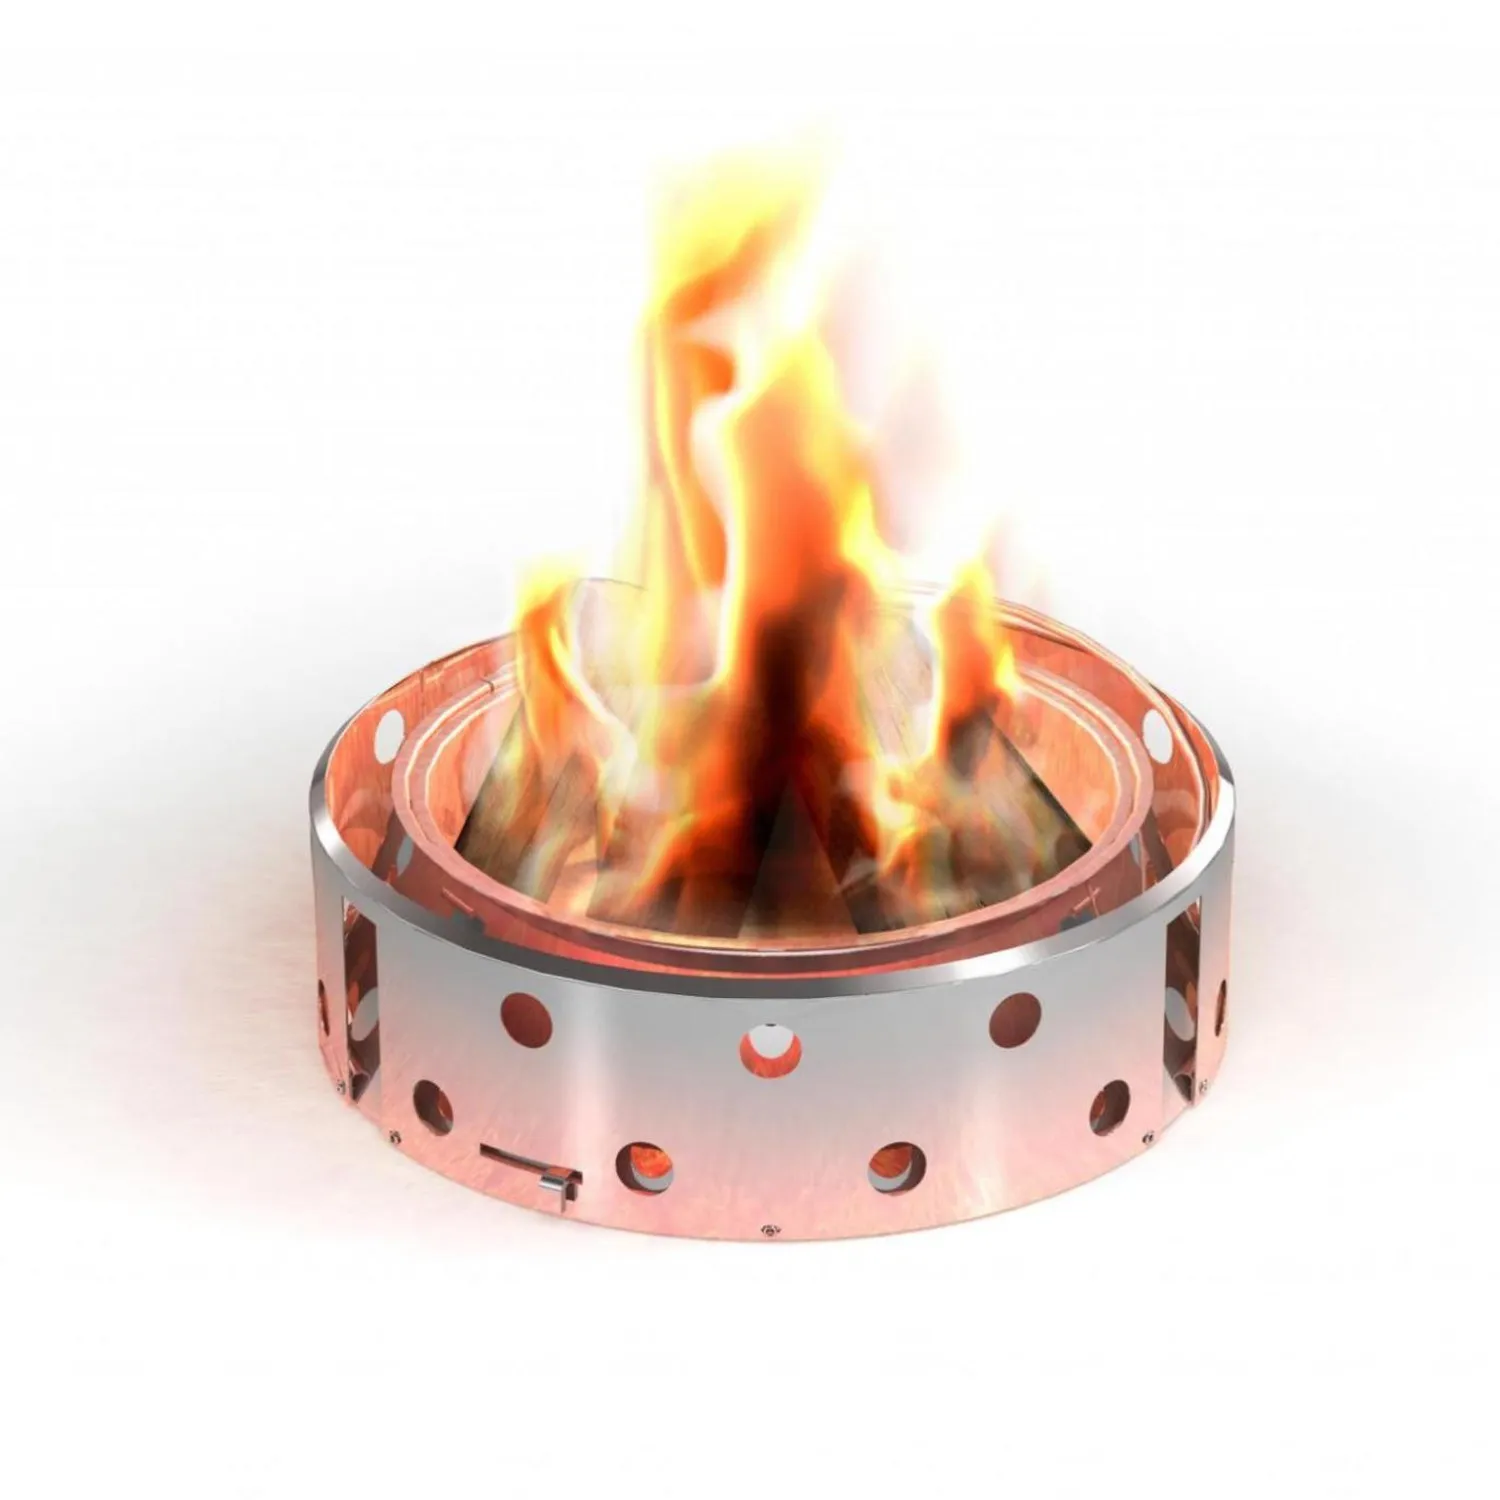 Petromax_atago-Atago als Feuerschale.jpg